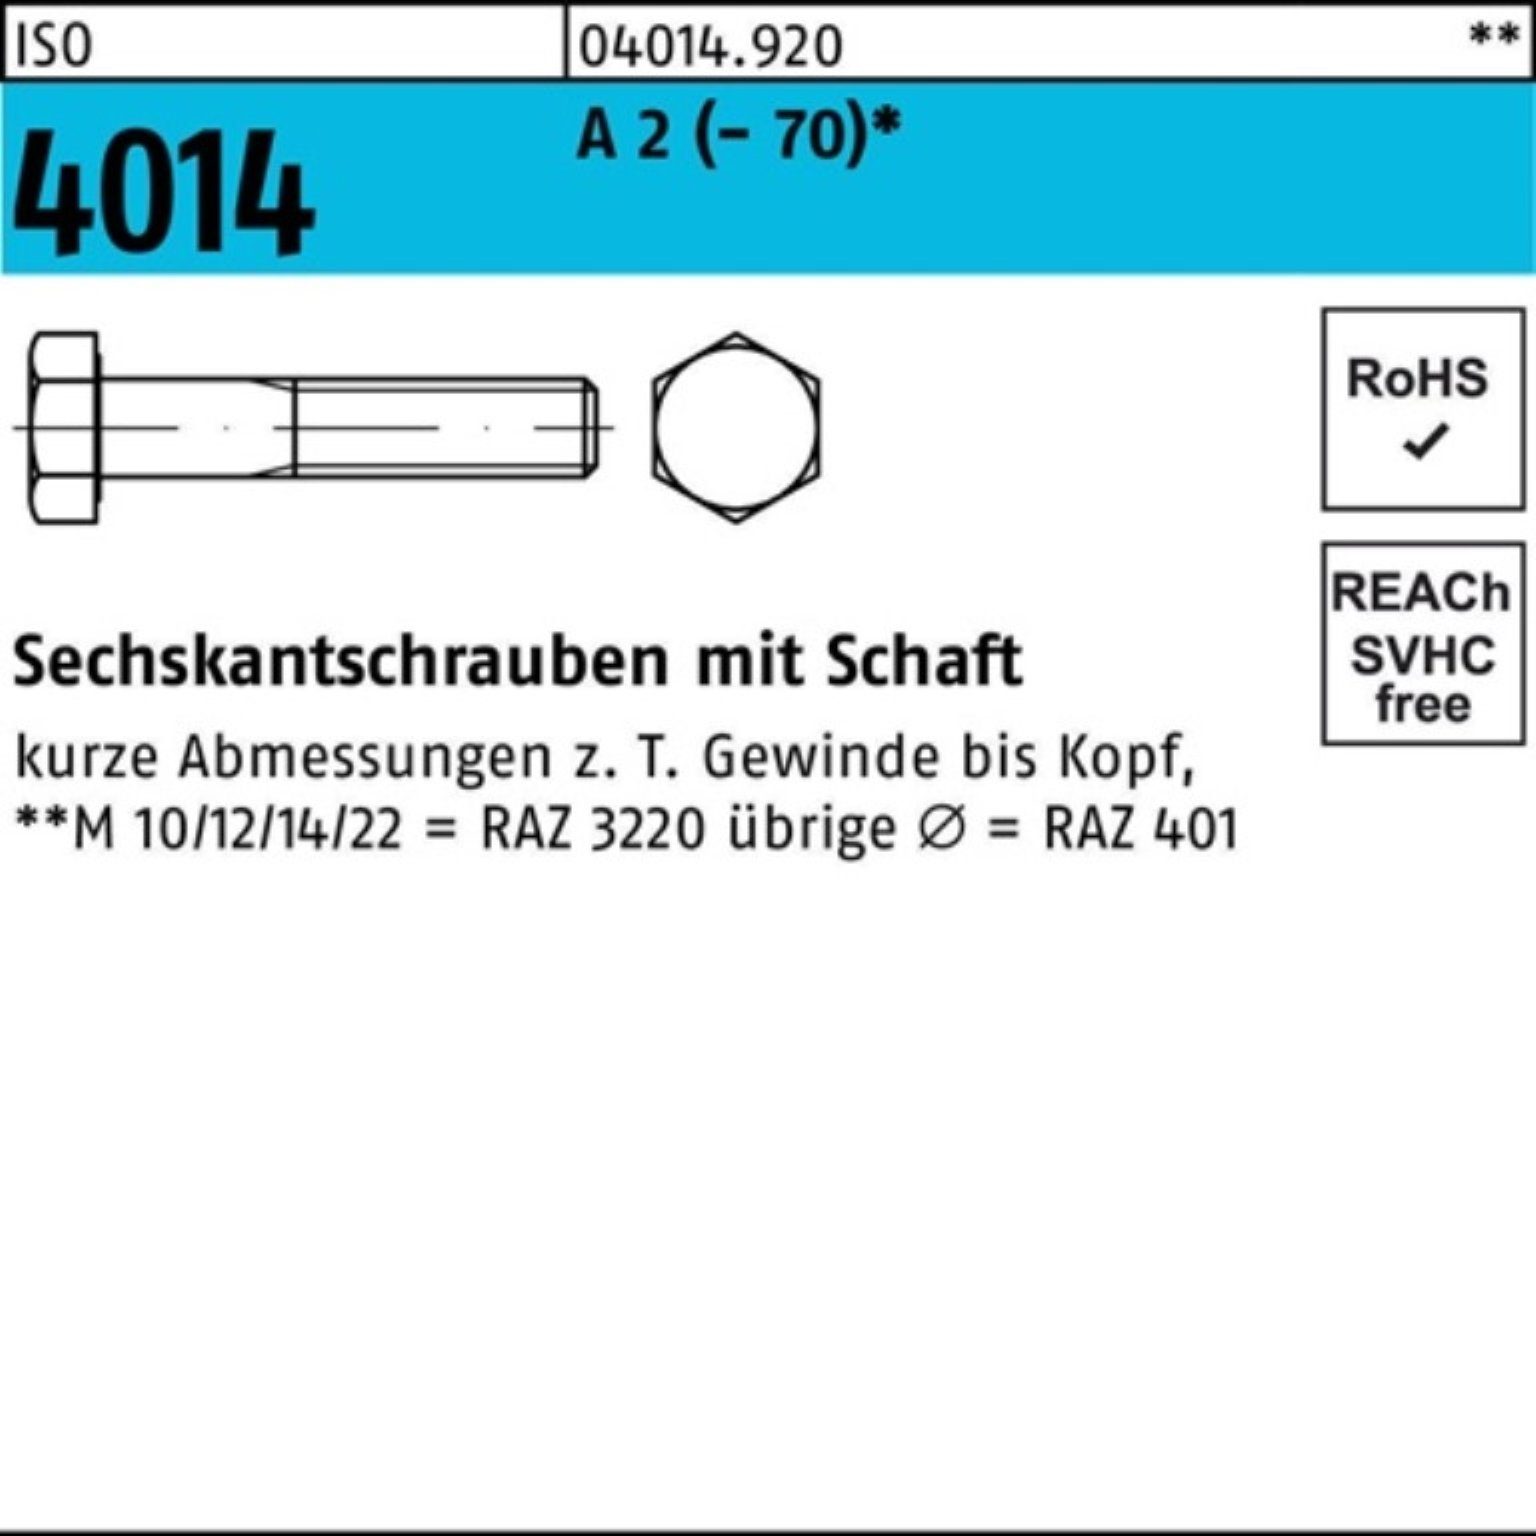 Bufab Sechskantschraube 100er Pack Sechskantschraube ISO 4014 Schaft M10x 210 A 2 (70) 1 St